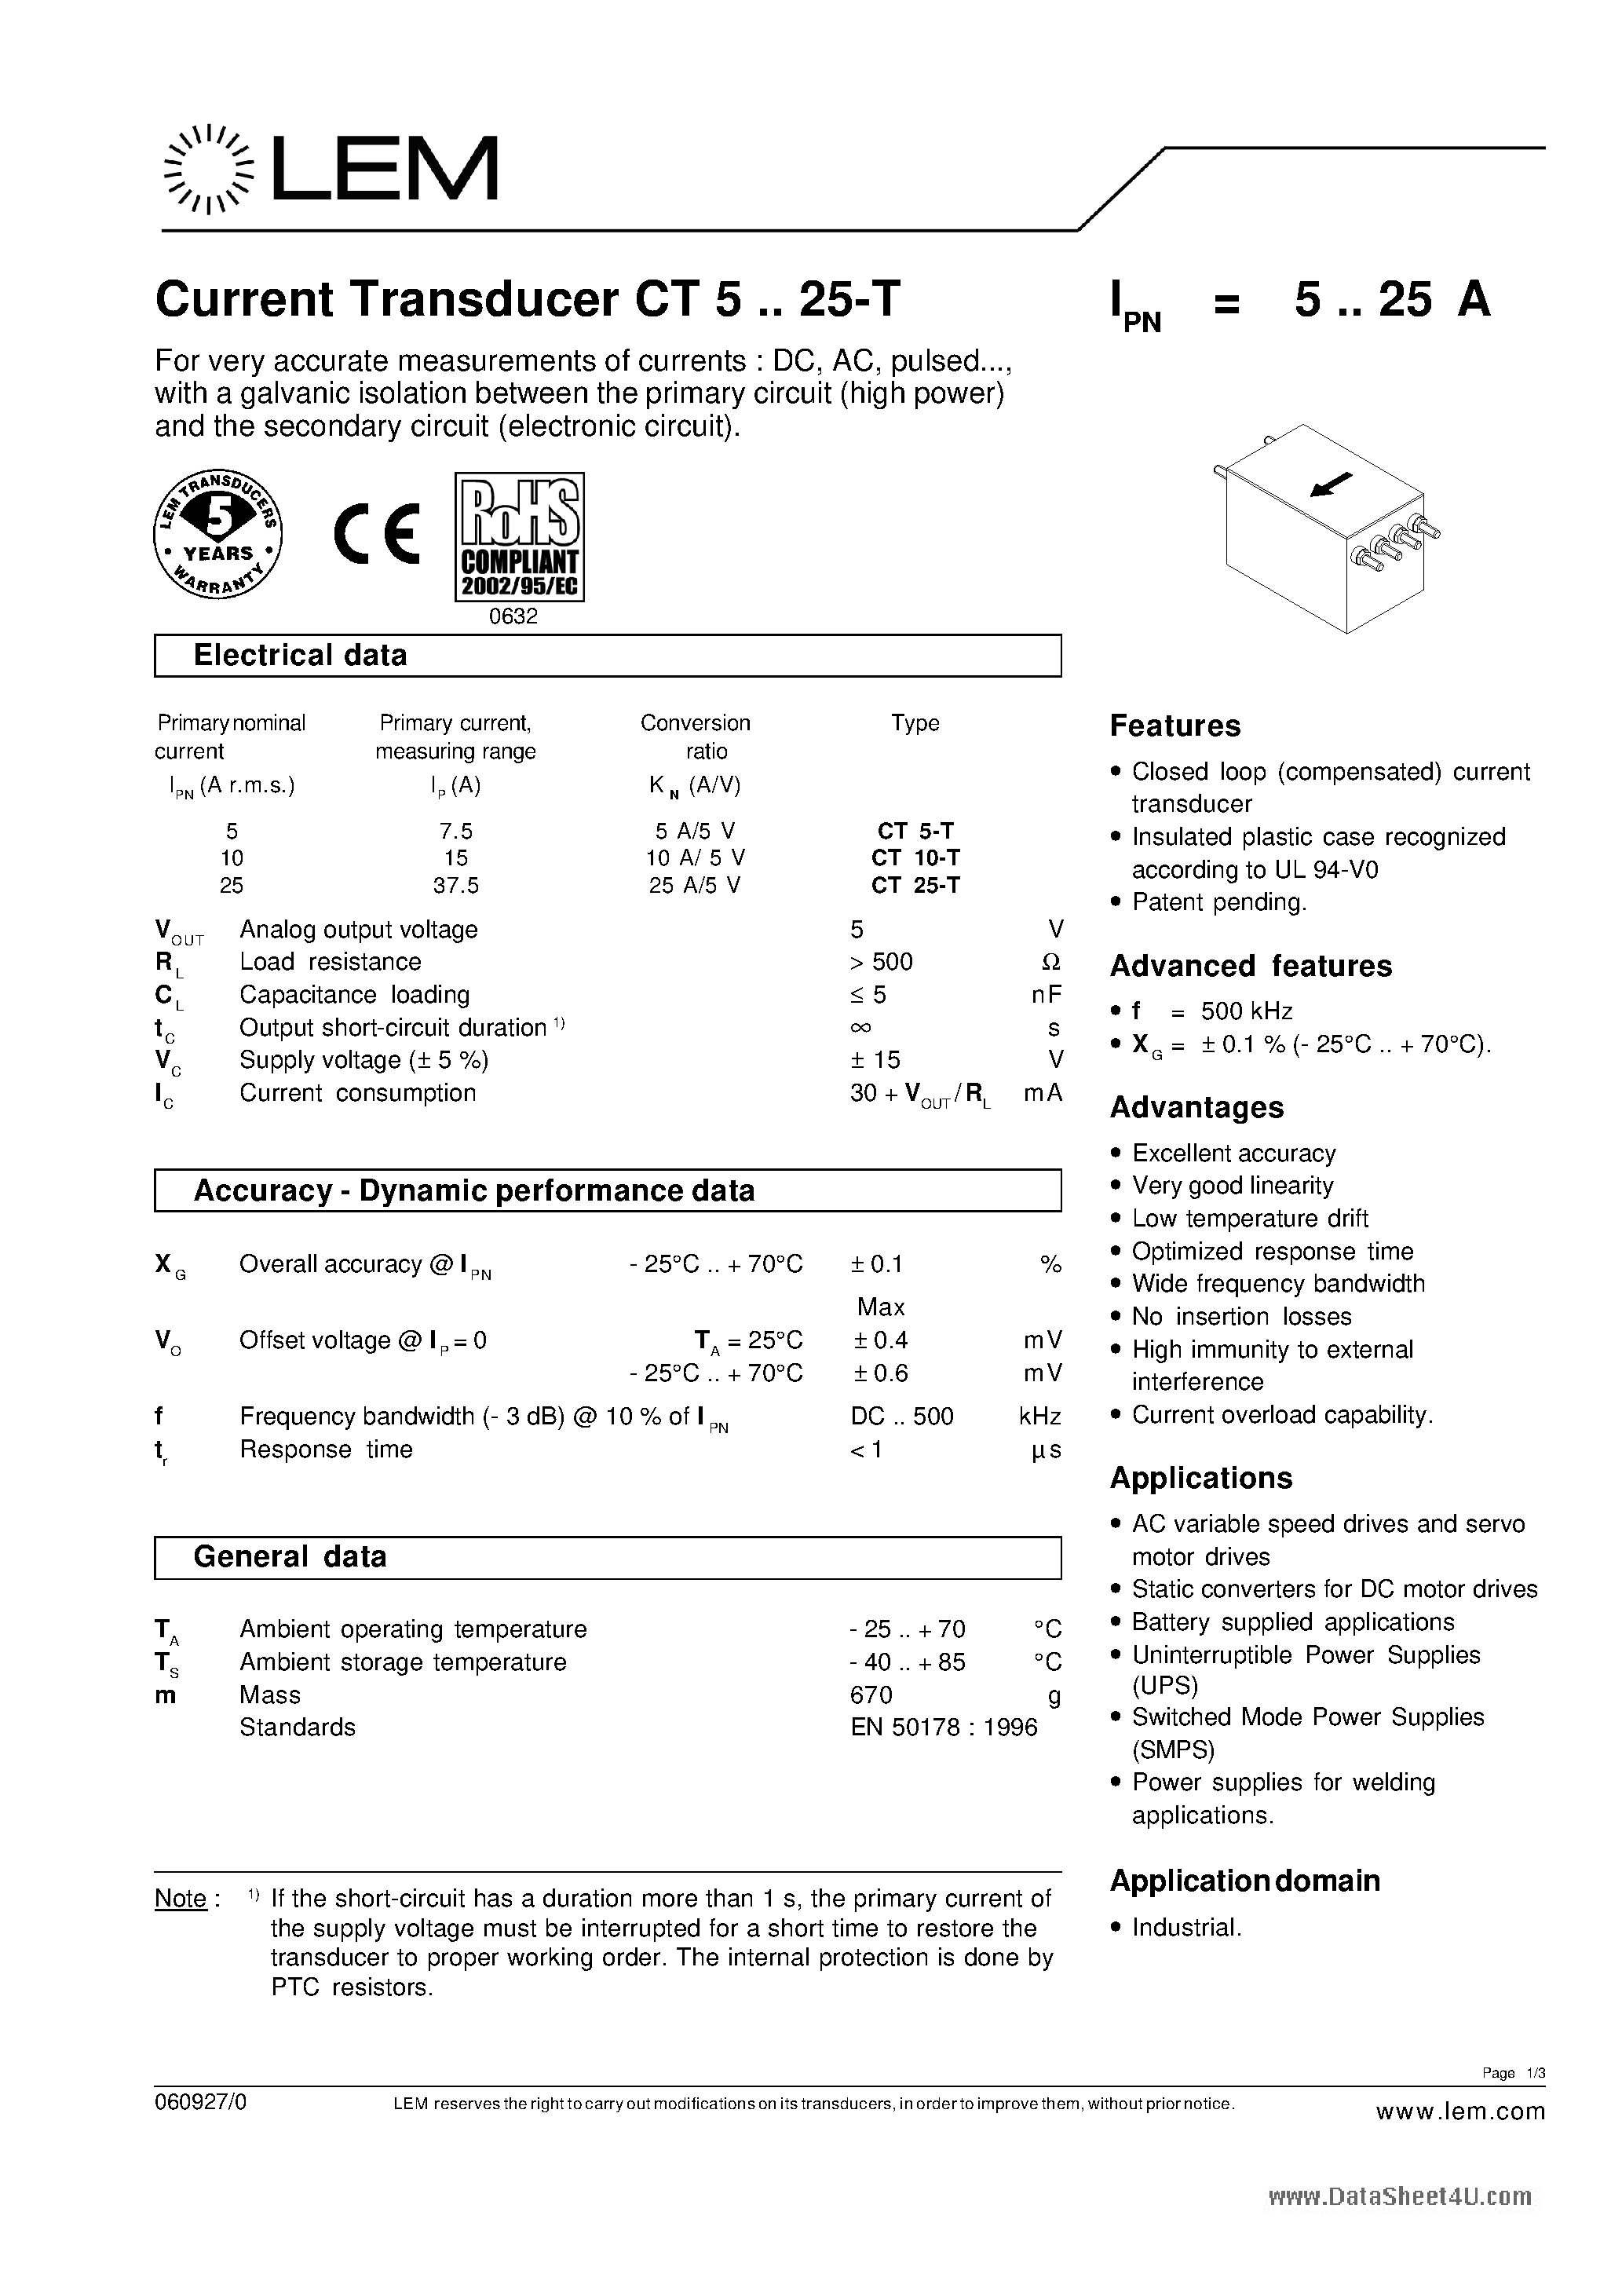 Даташит CT5-T - Current Transducer страница 1